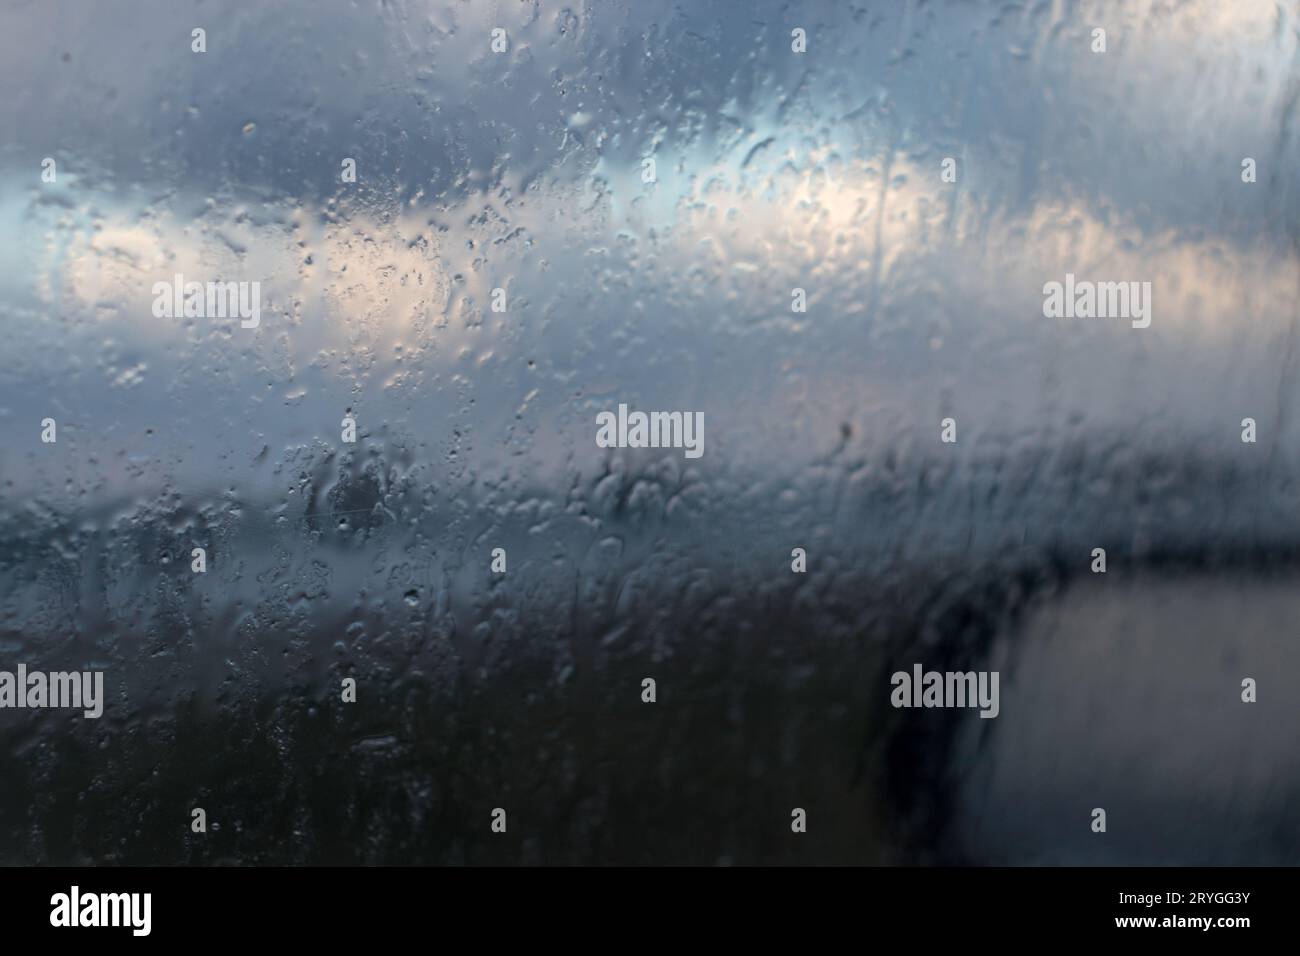 La pioggia fa cadere l'acqua sul finestrino dell'auto. vista dalla superficie dell'auto con finestrino in vetro e gocce d'acqua in una giornata di pioggia Foto Stock